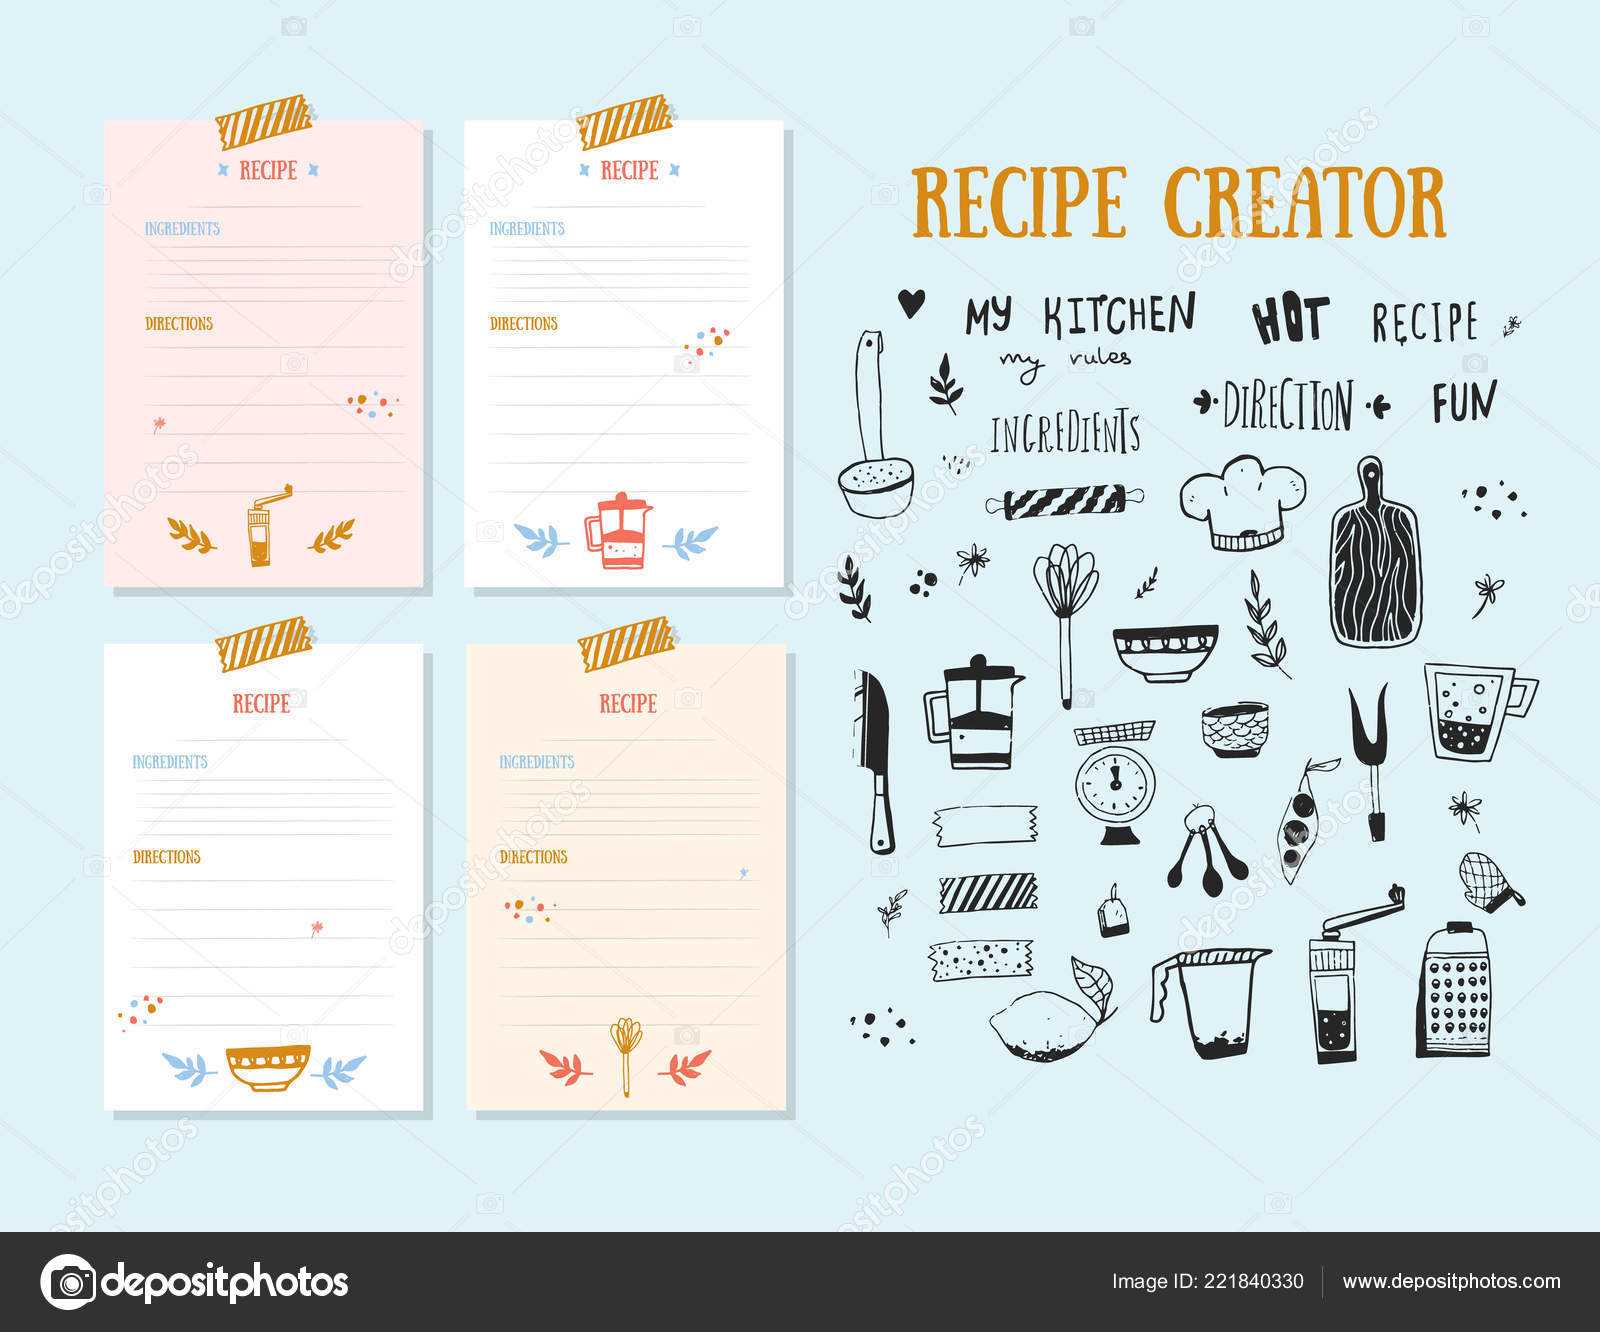 Cookbook Design Template | Modern Recipe Card Template Set With Regard To Recipe Card Design Template